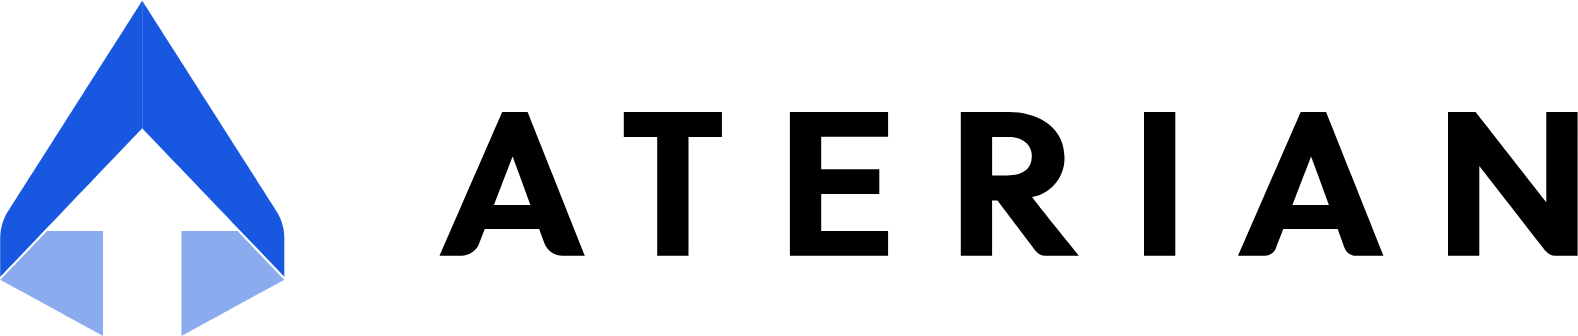 Aterian logo large (transparent PNG)